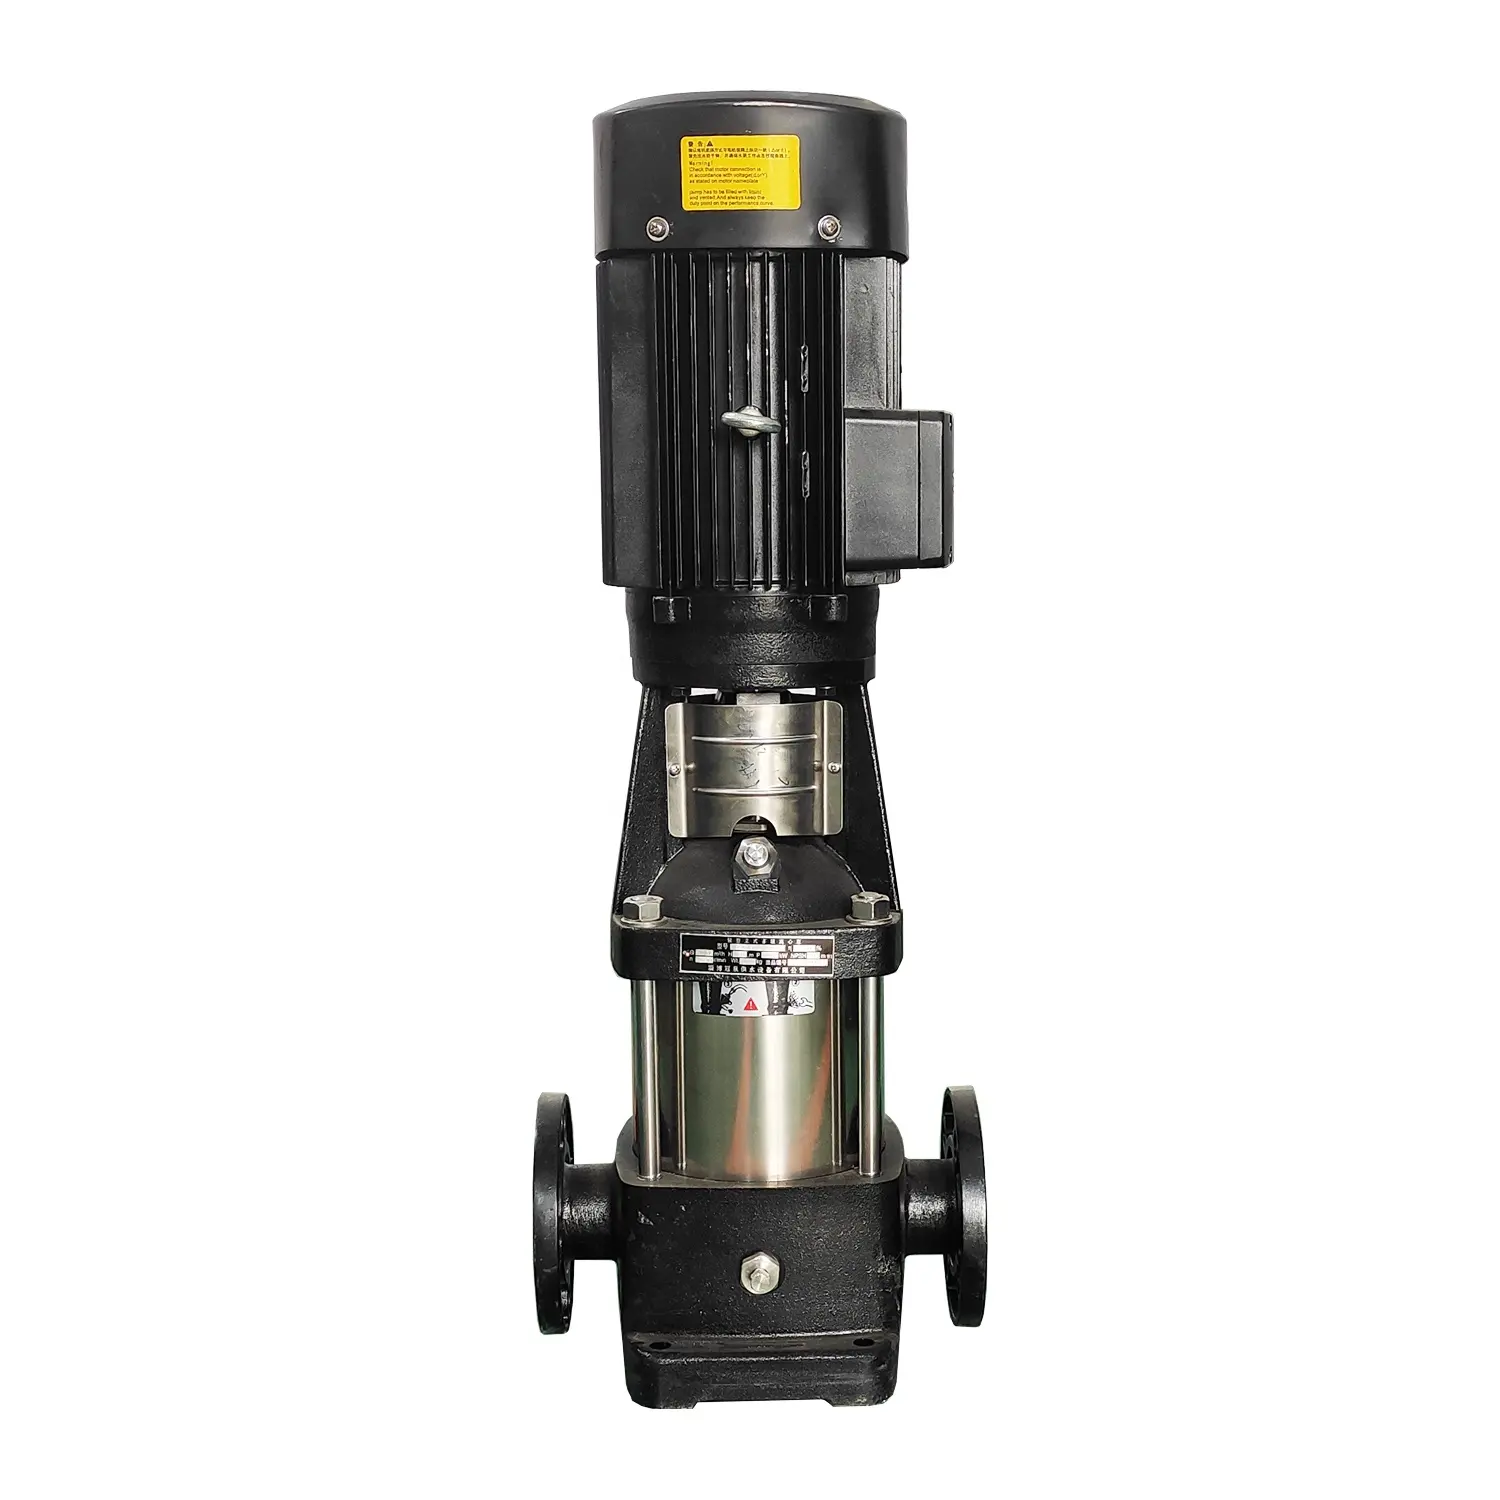 Pompa multistadio a pressione costante a frequenza variabile verticale CDL, design del sistema di approvvigionamento idrico